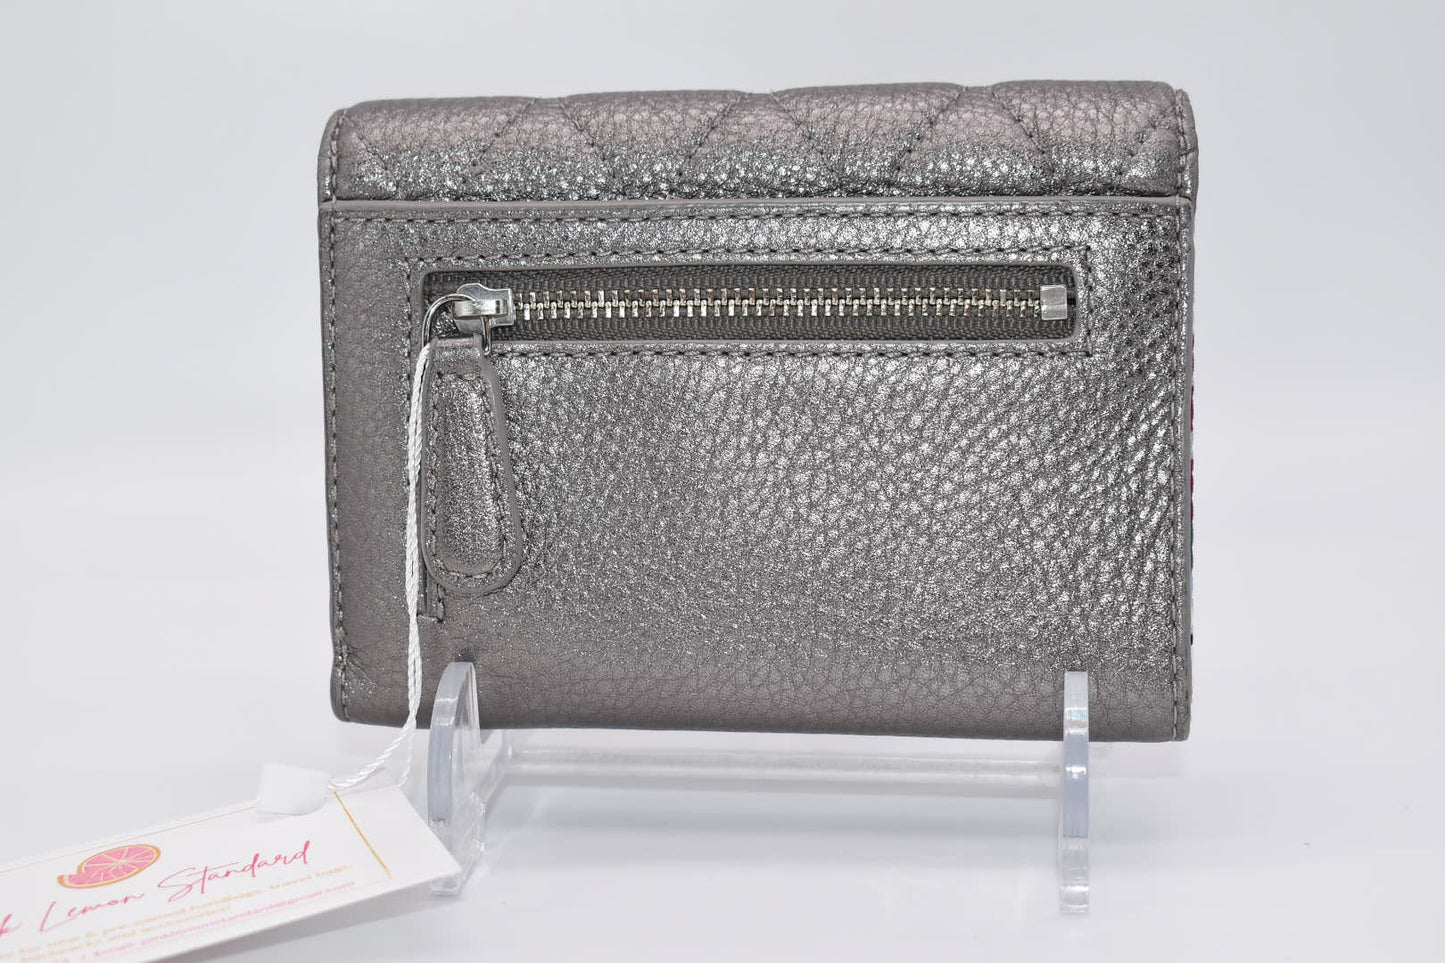 Vera Bradley Leather Riley Compact Wallet in "Caspian Sea" Pattern